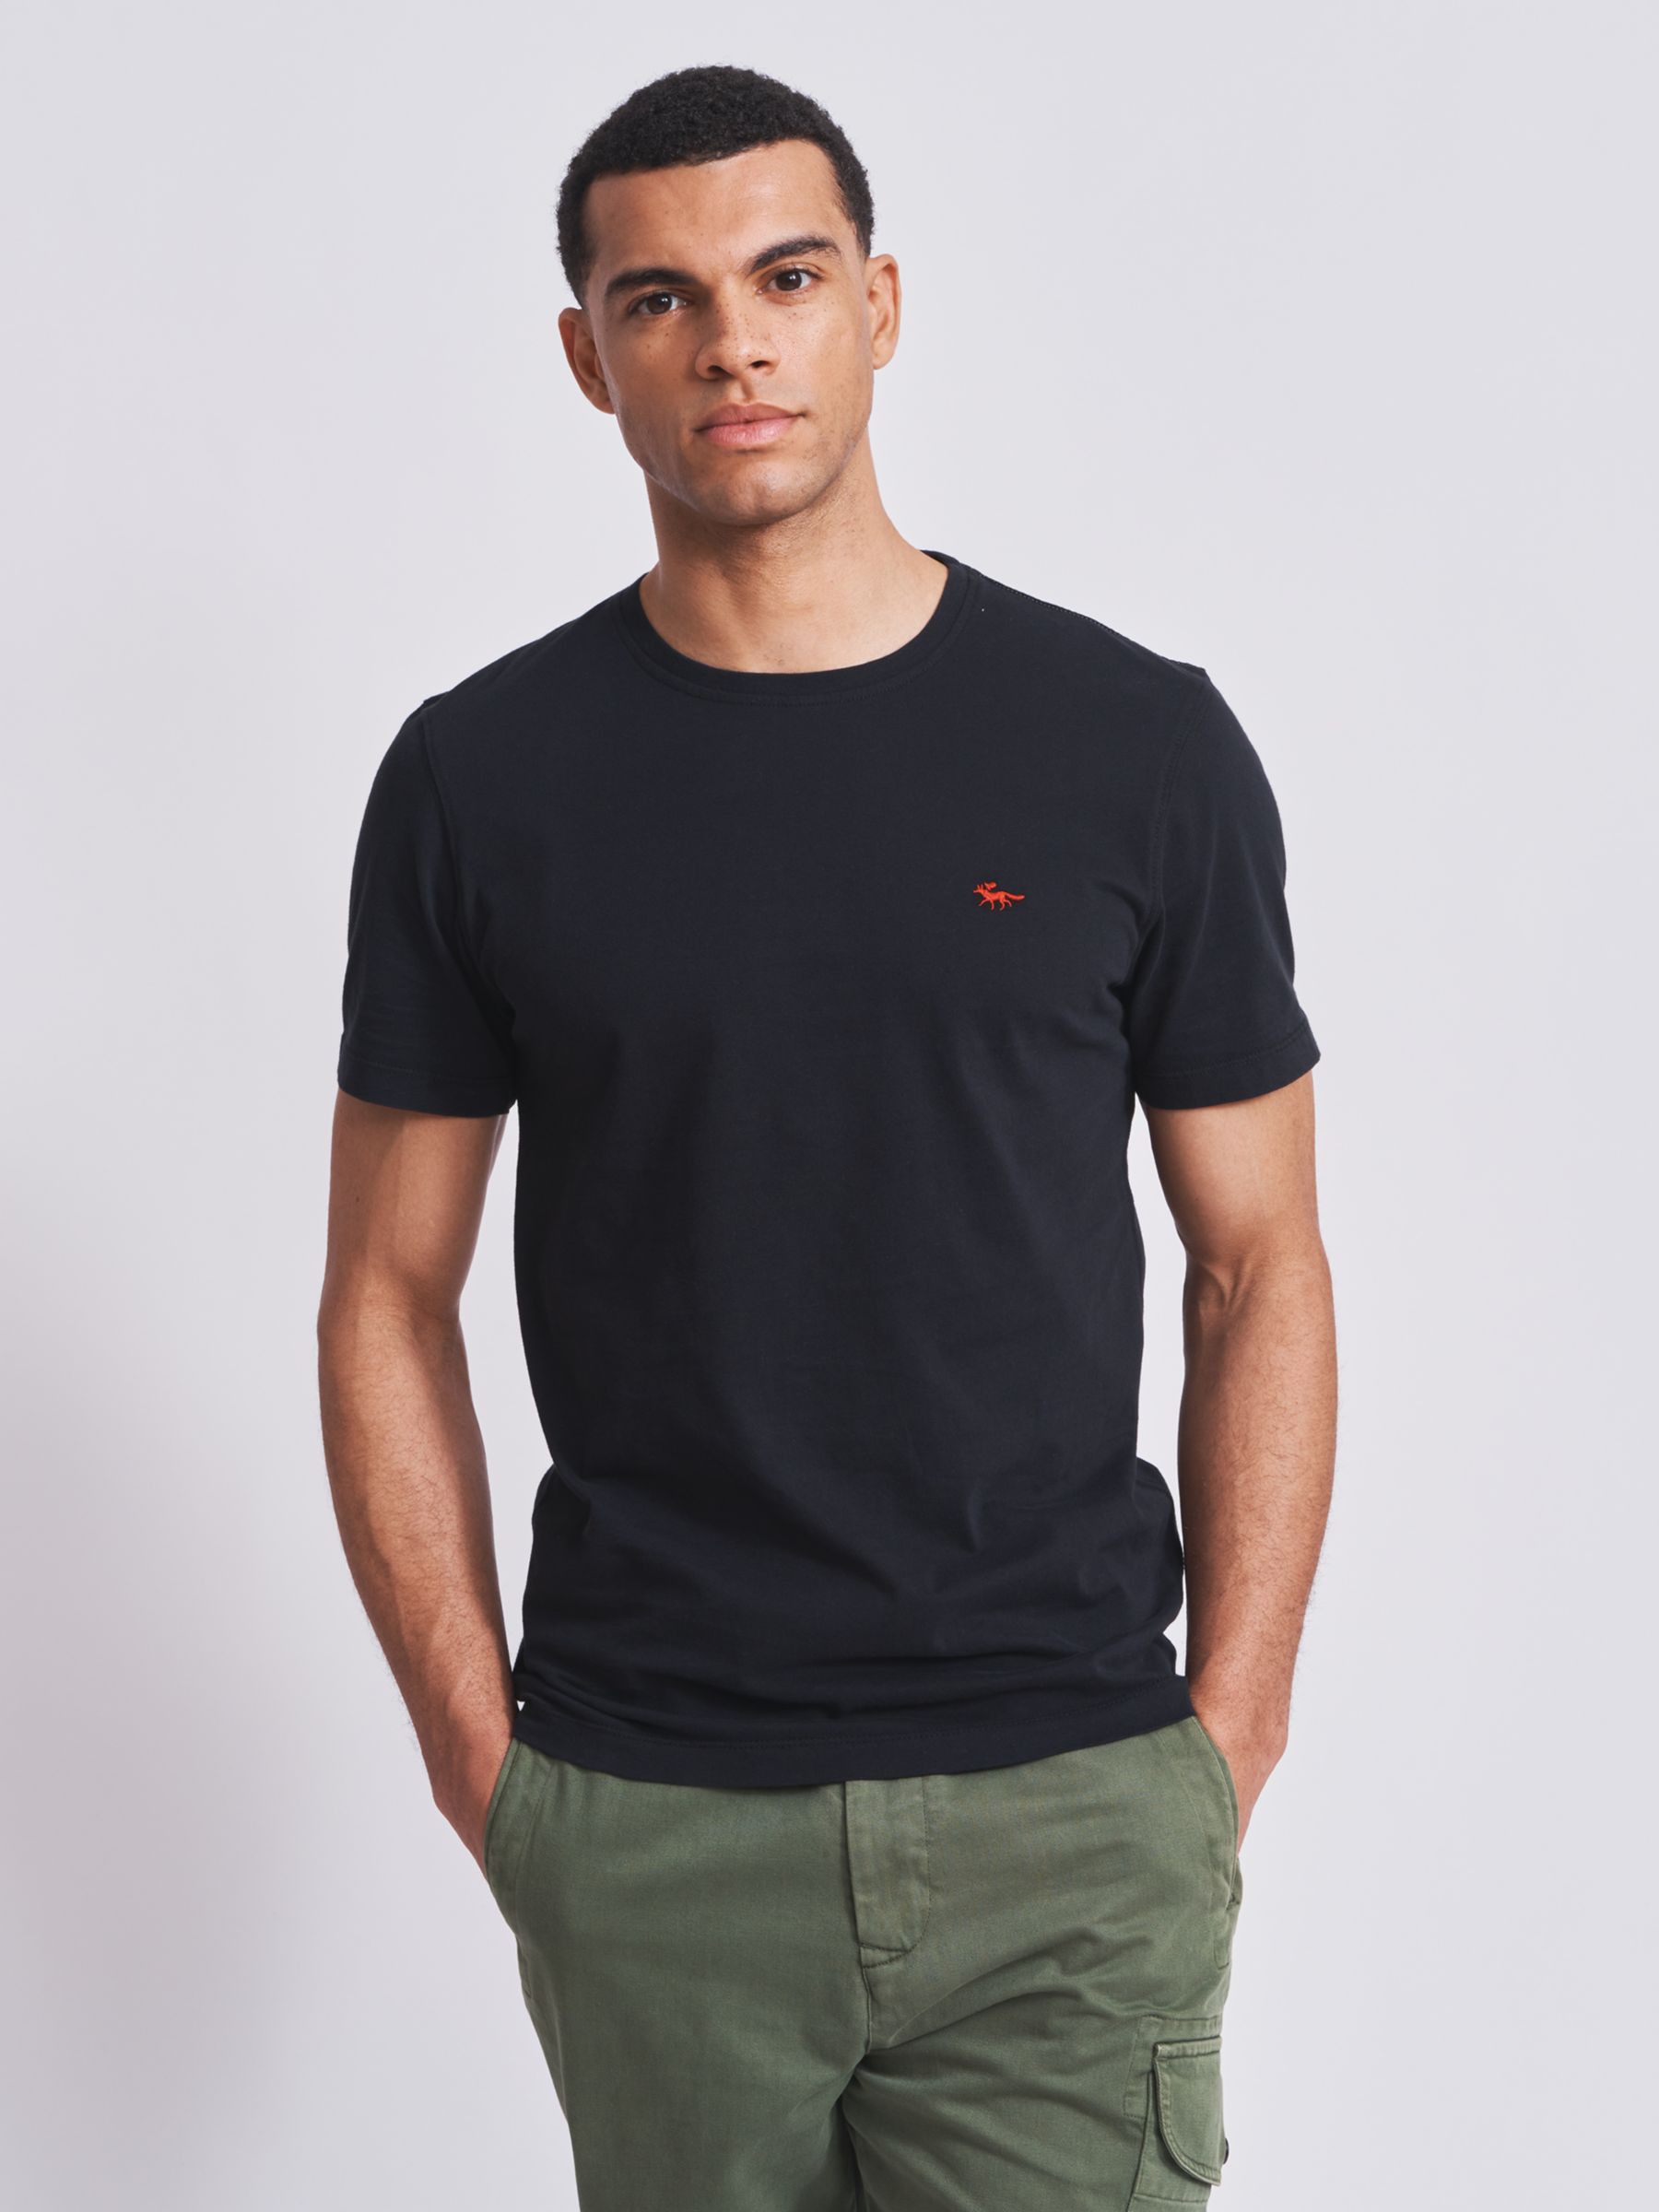 Aubin Logo Cotton T-shirt, Black, XS